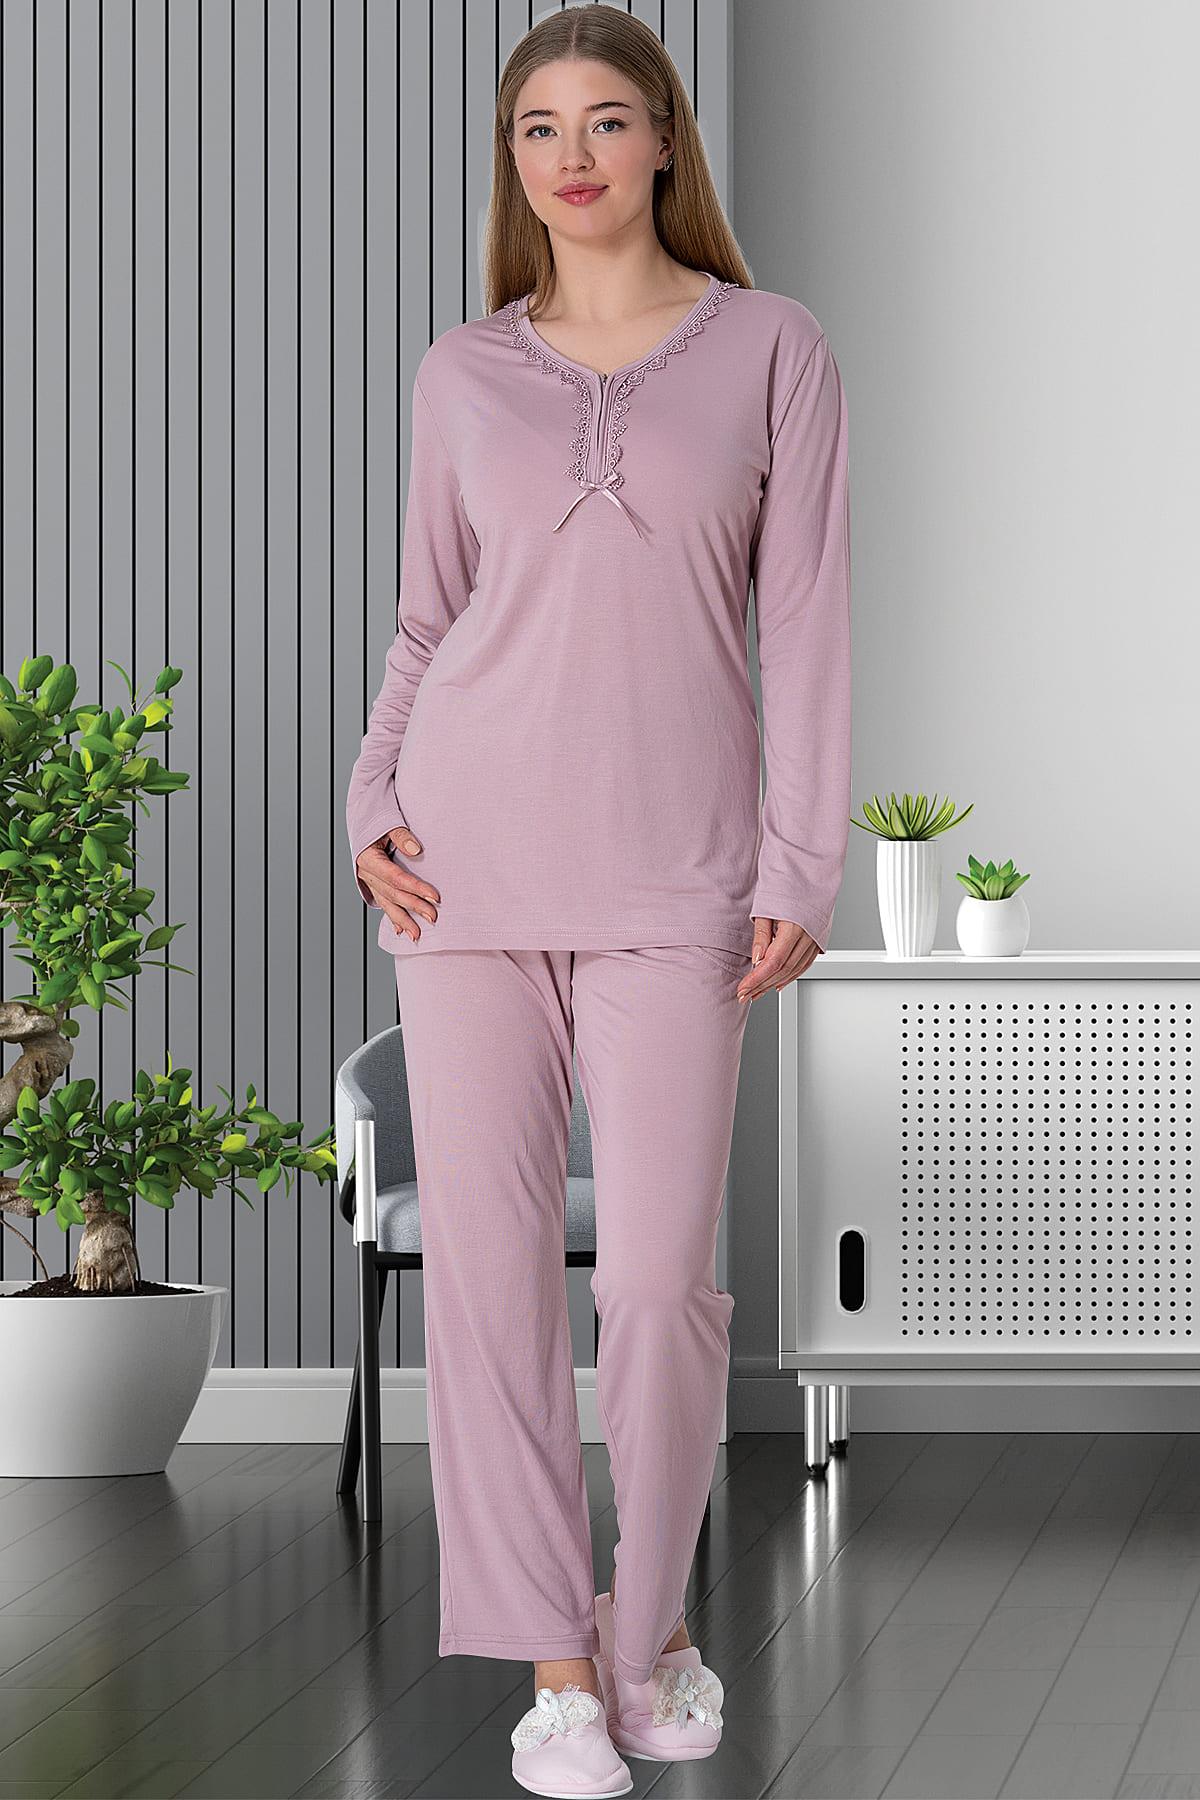 Mecit 5826 Gül Kurusu Büyük Beden Kadın Sabahlıklı Pijama Takımı | Mecit  Pijama